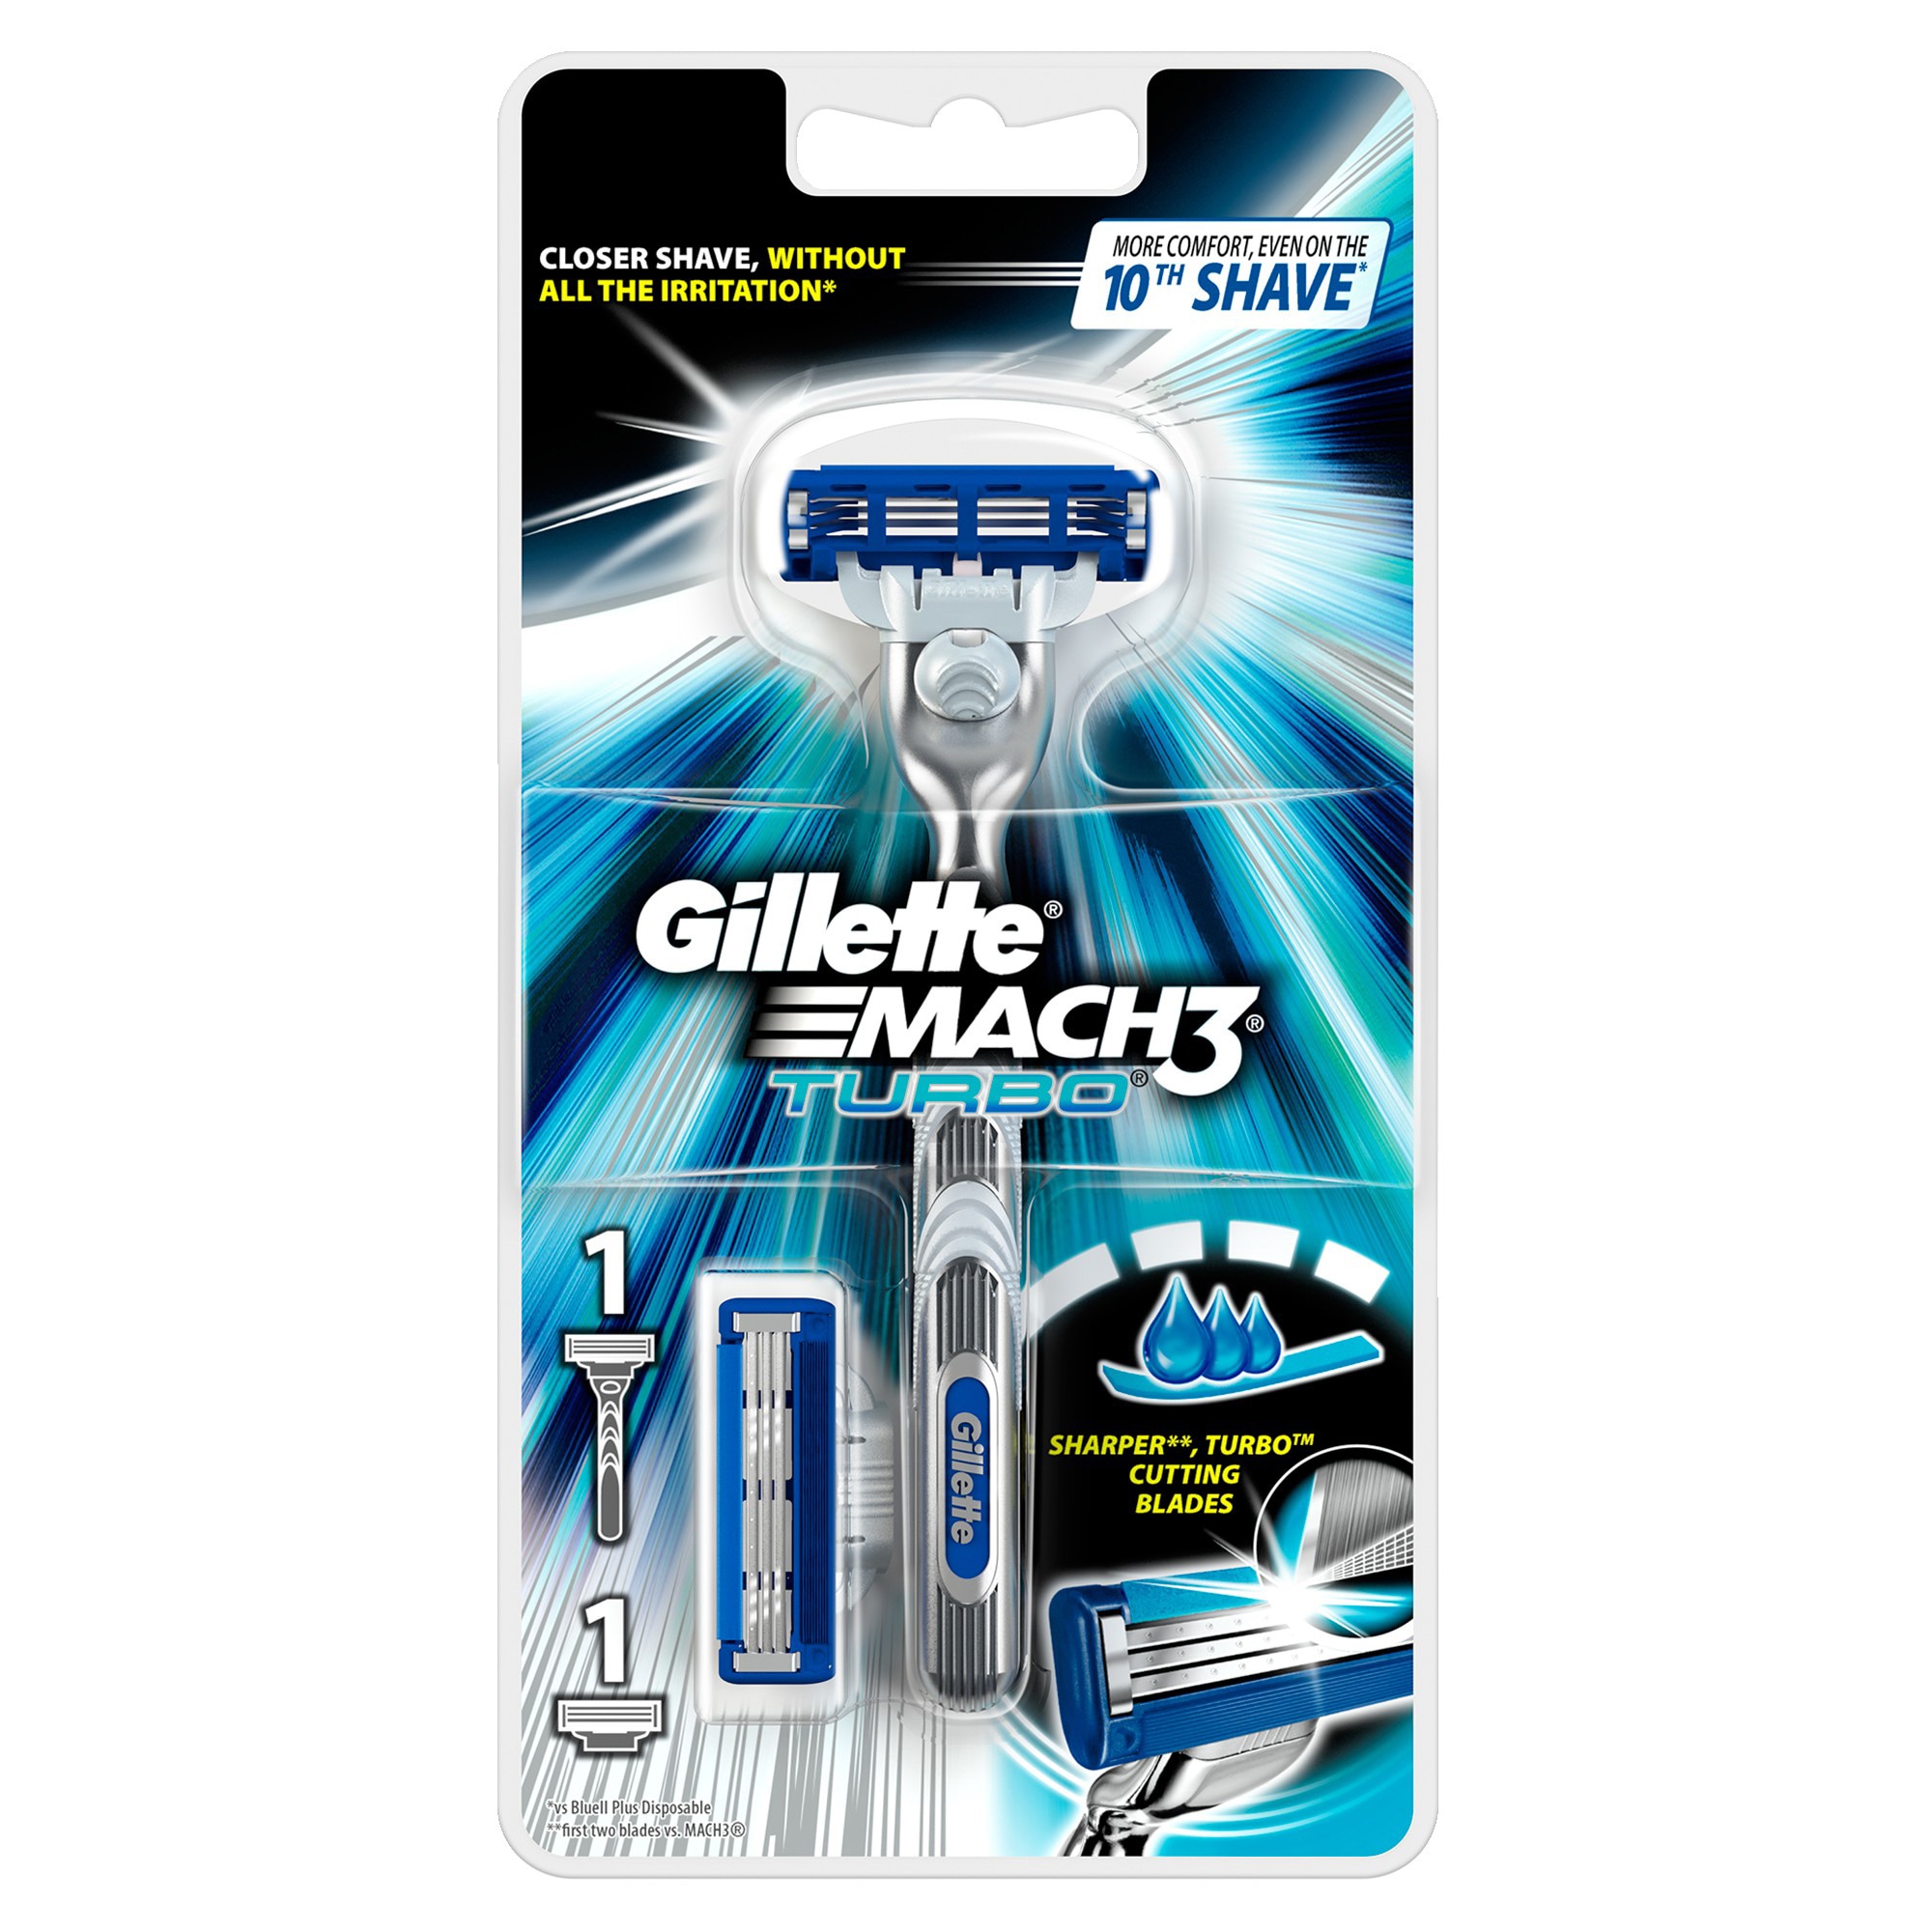 Gillette Mach 3 Turbo rakhyvel 274856 - Rakhyvlar och rakblad ...